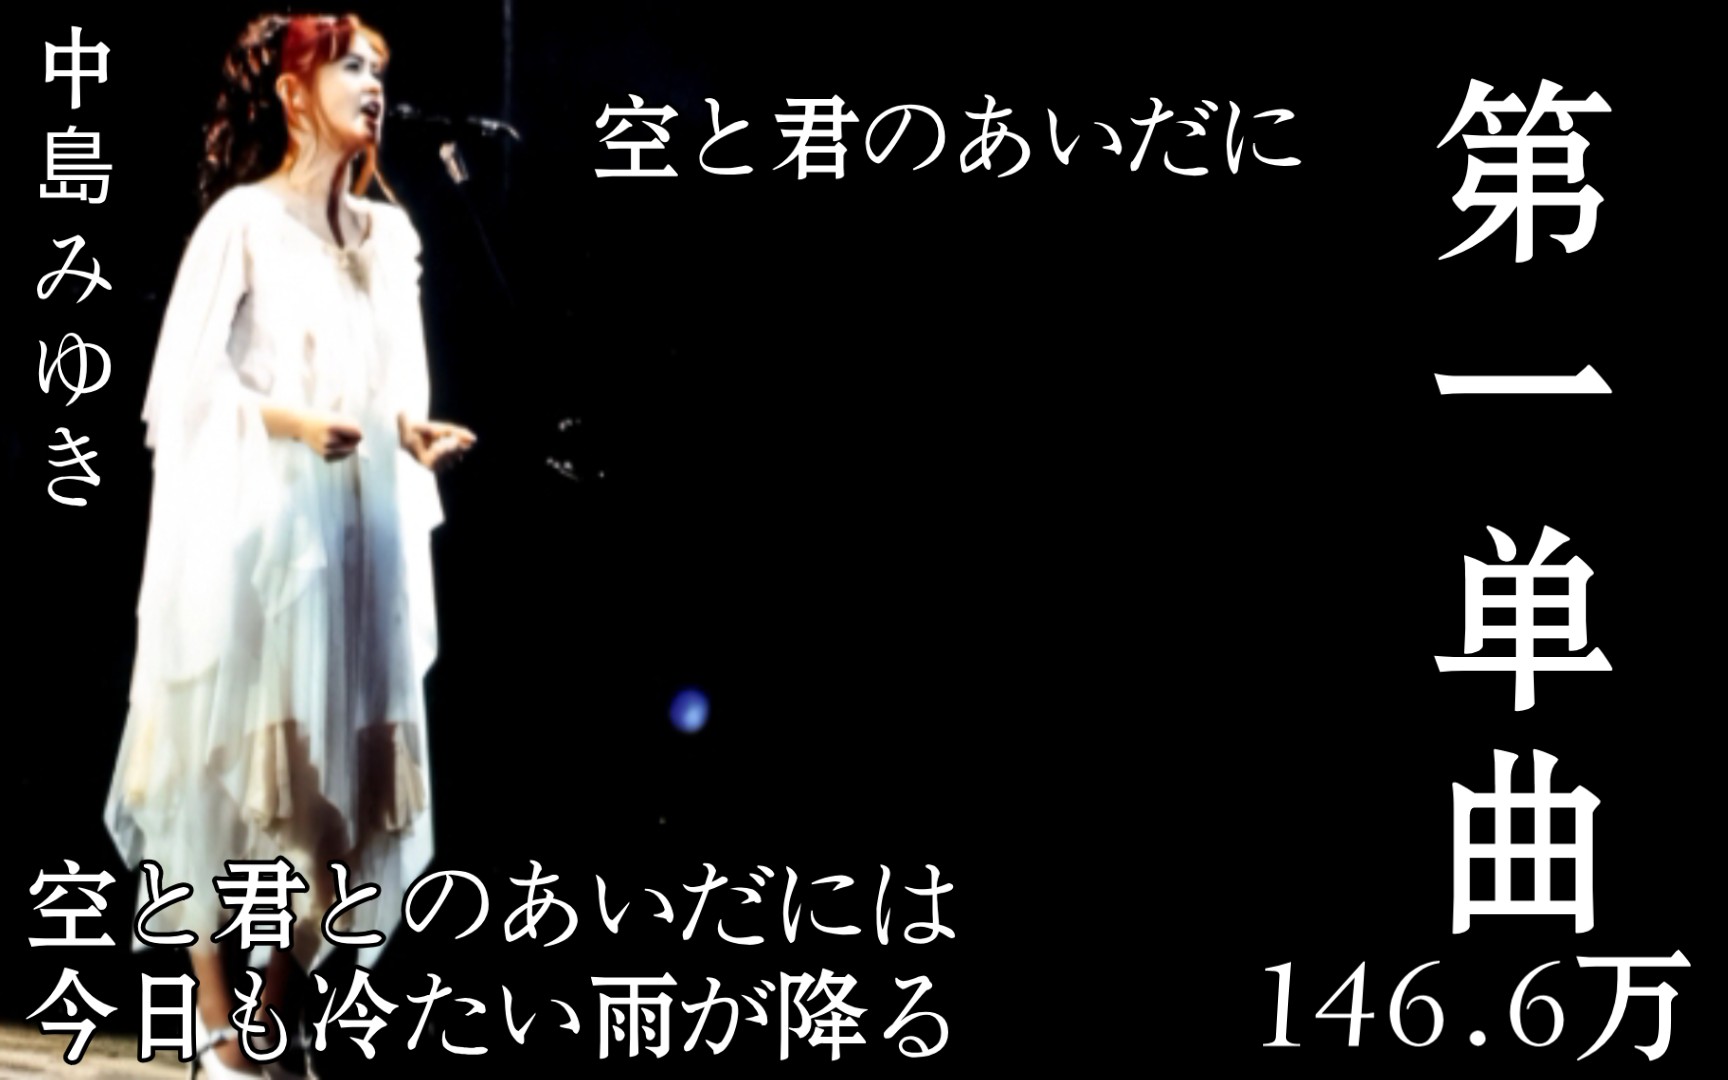 中岛美雪破百万销量第一单曲—「空と君のあいだに」